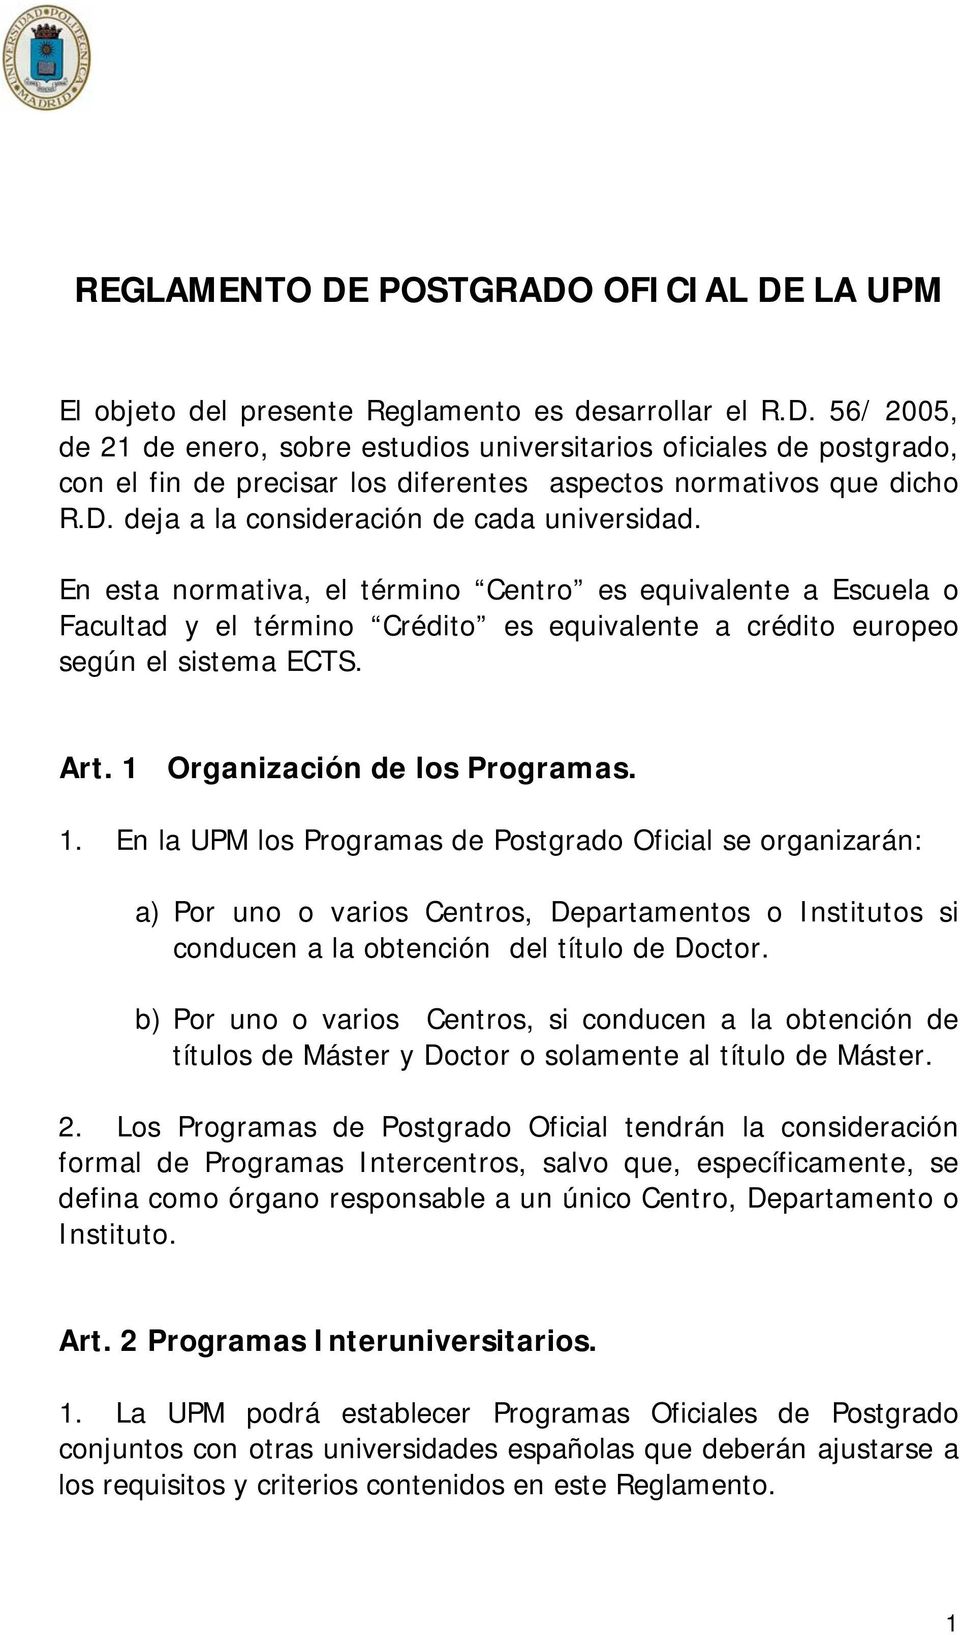 Art. 1 Organización de los Programas. 1. En la UPM los Programas de Postgrado Oficial se organizarán: a) Por uno o varios Centros, Departamentos o Institutos si conducen a la obtención del título de Doctor.